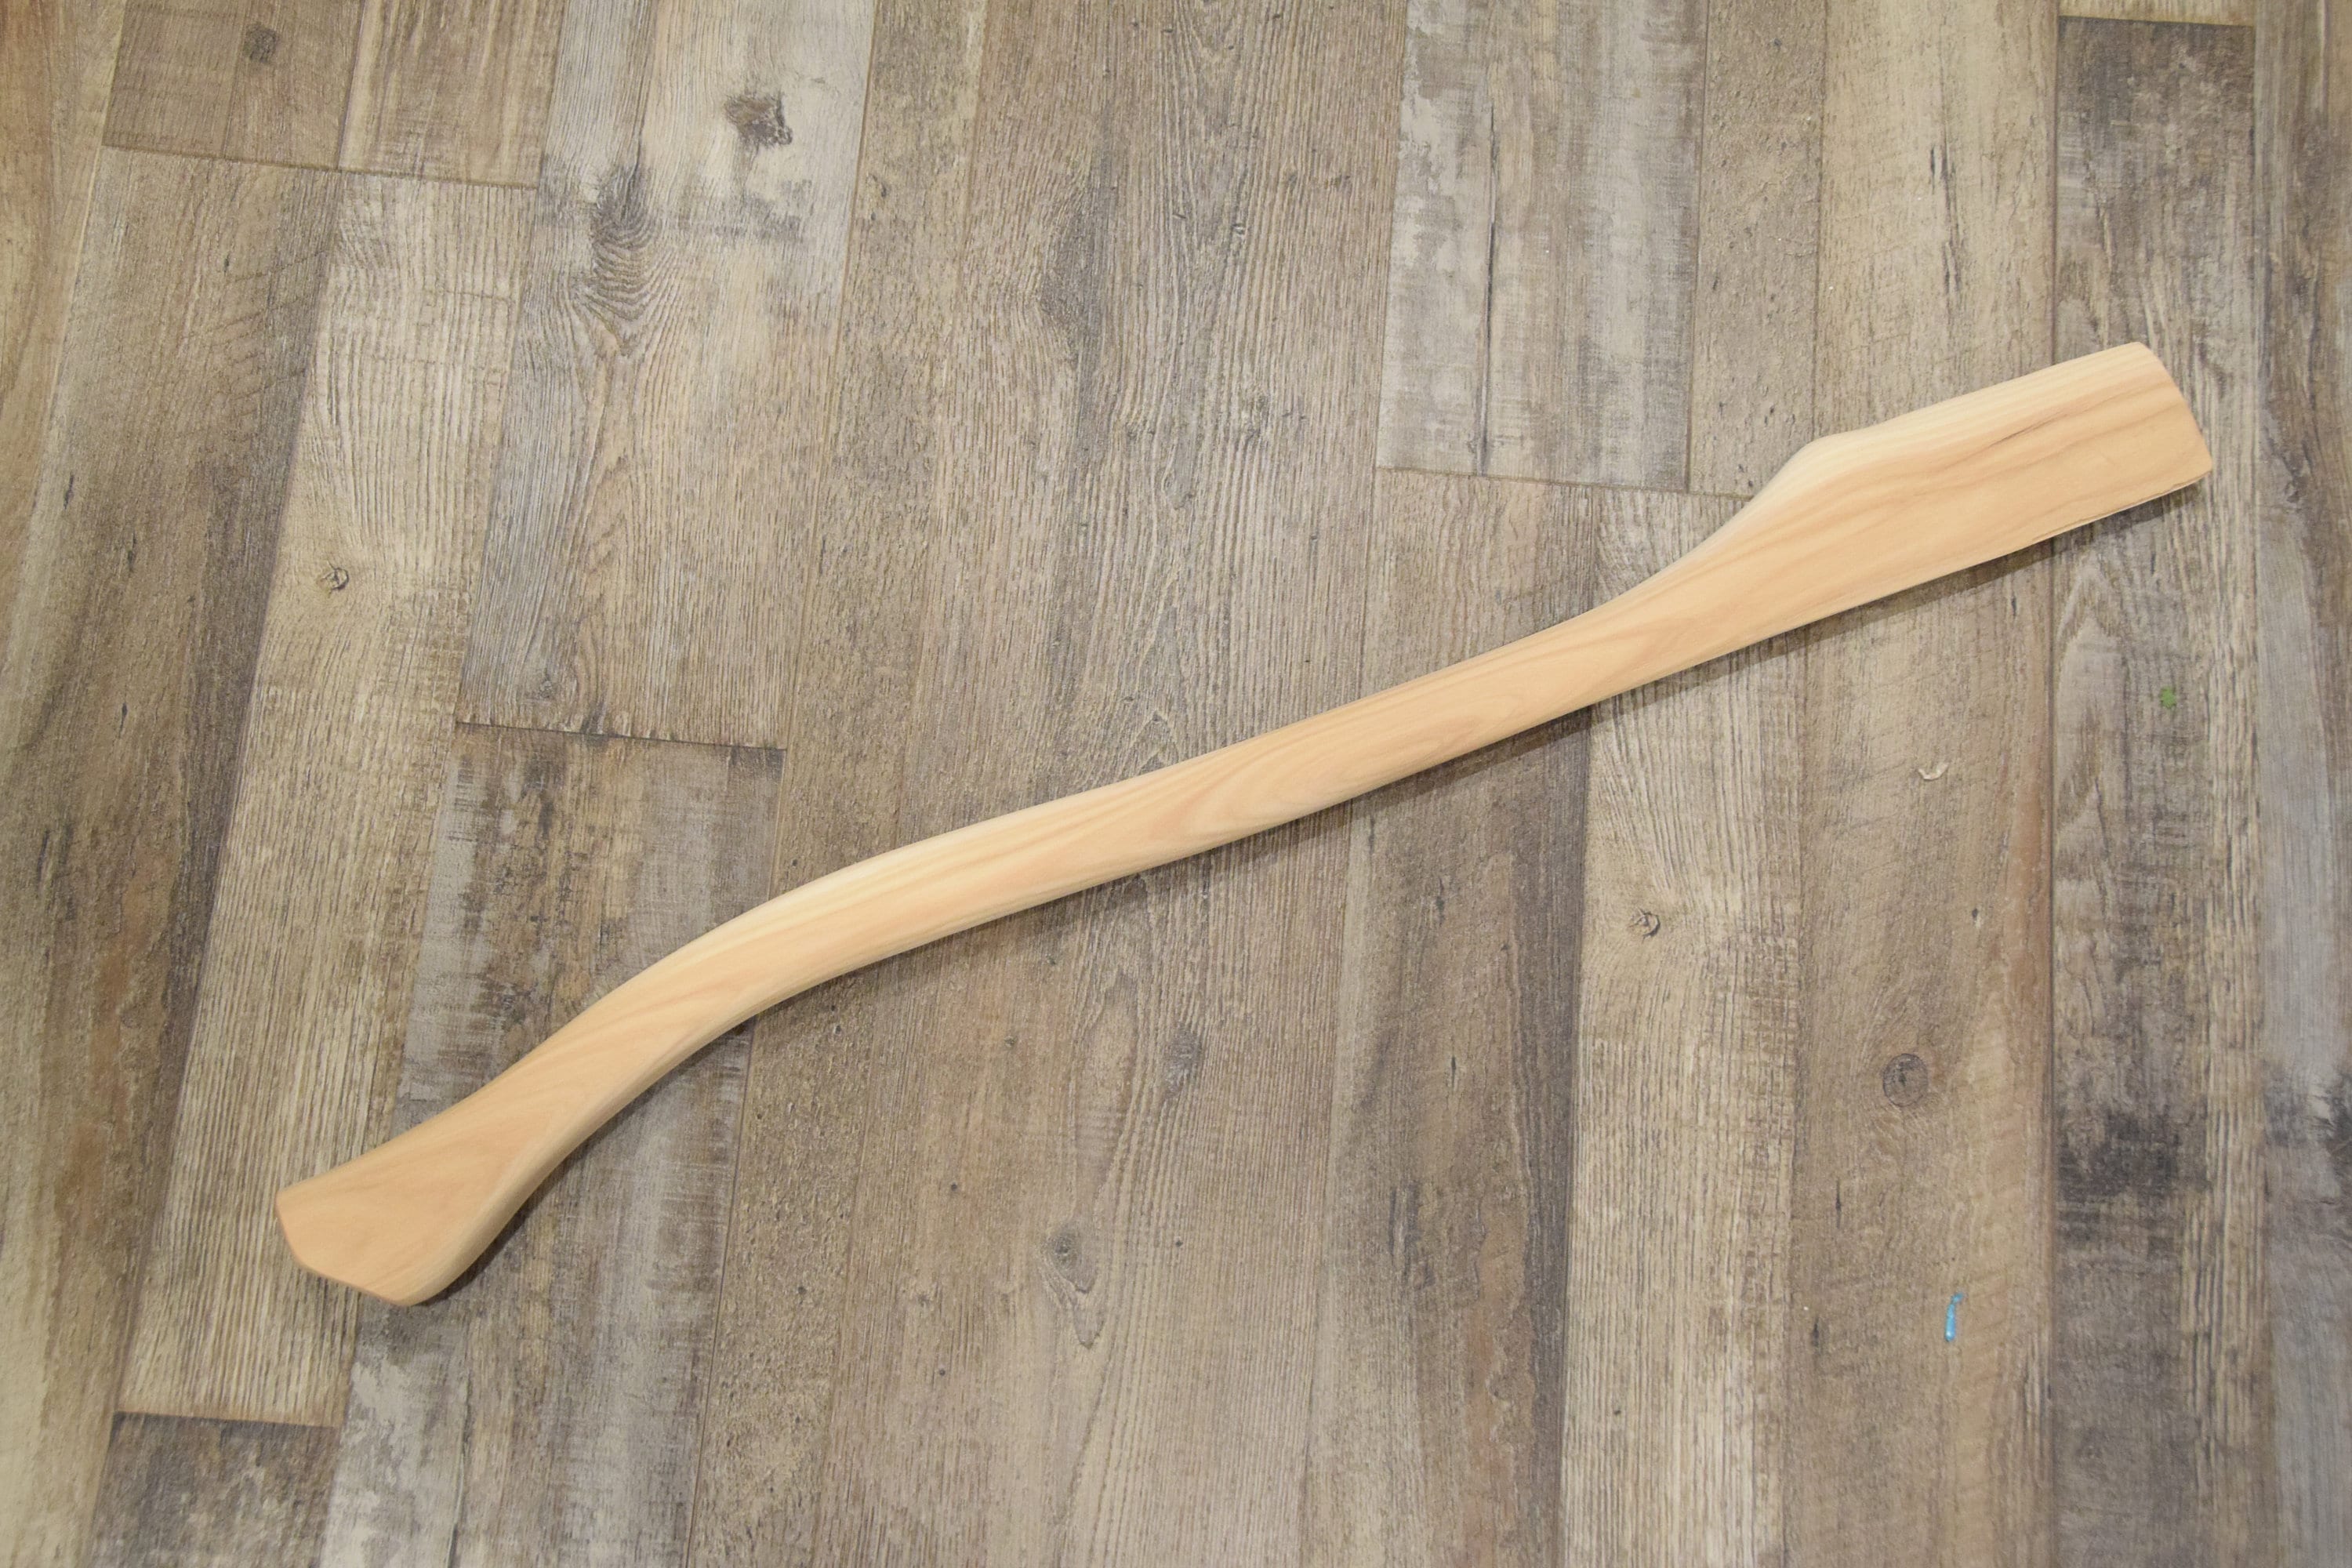 Flat Eye Style replacement handle AXE 14,4" Ash wood axe handle 